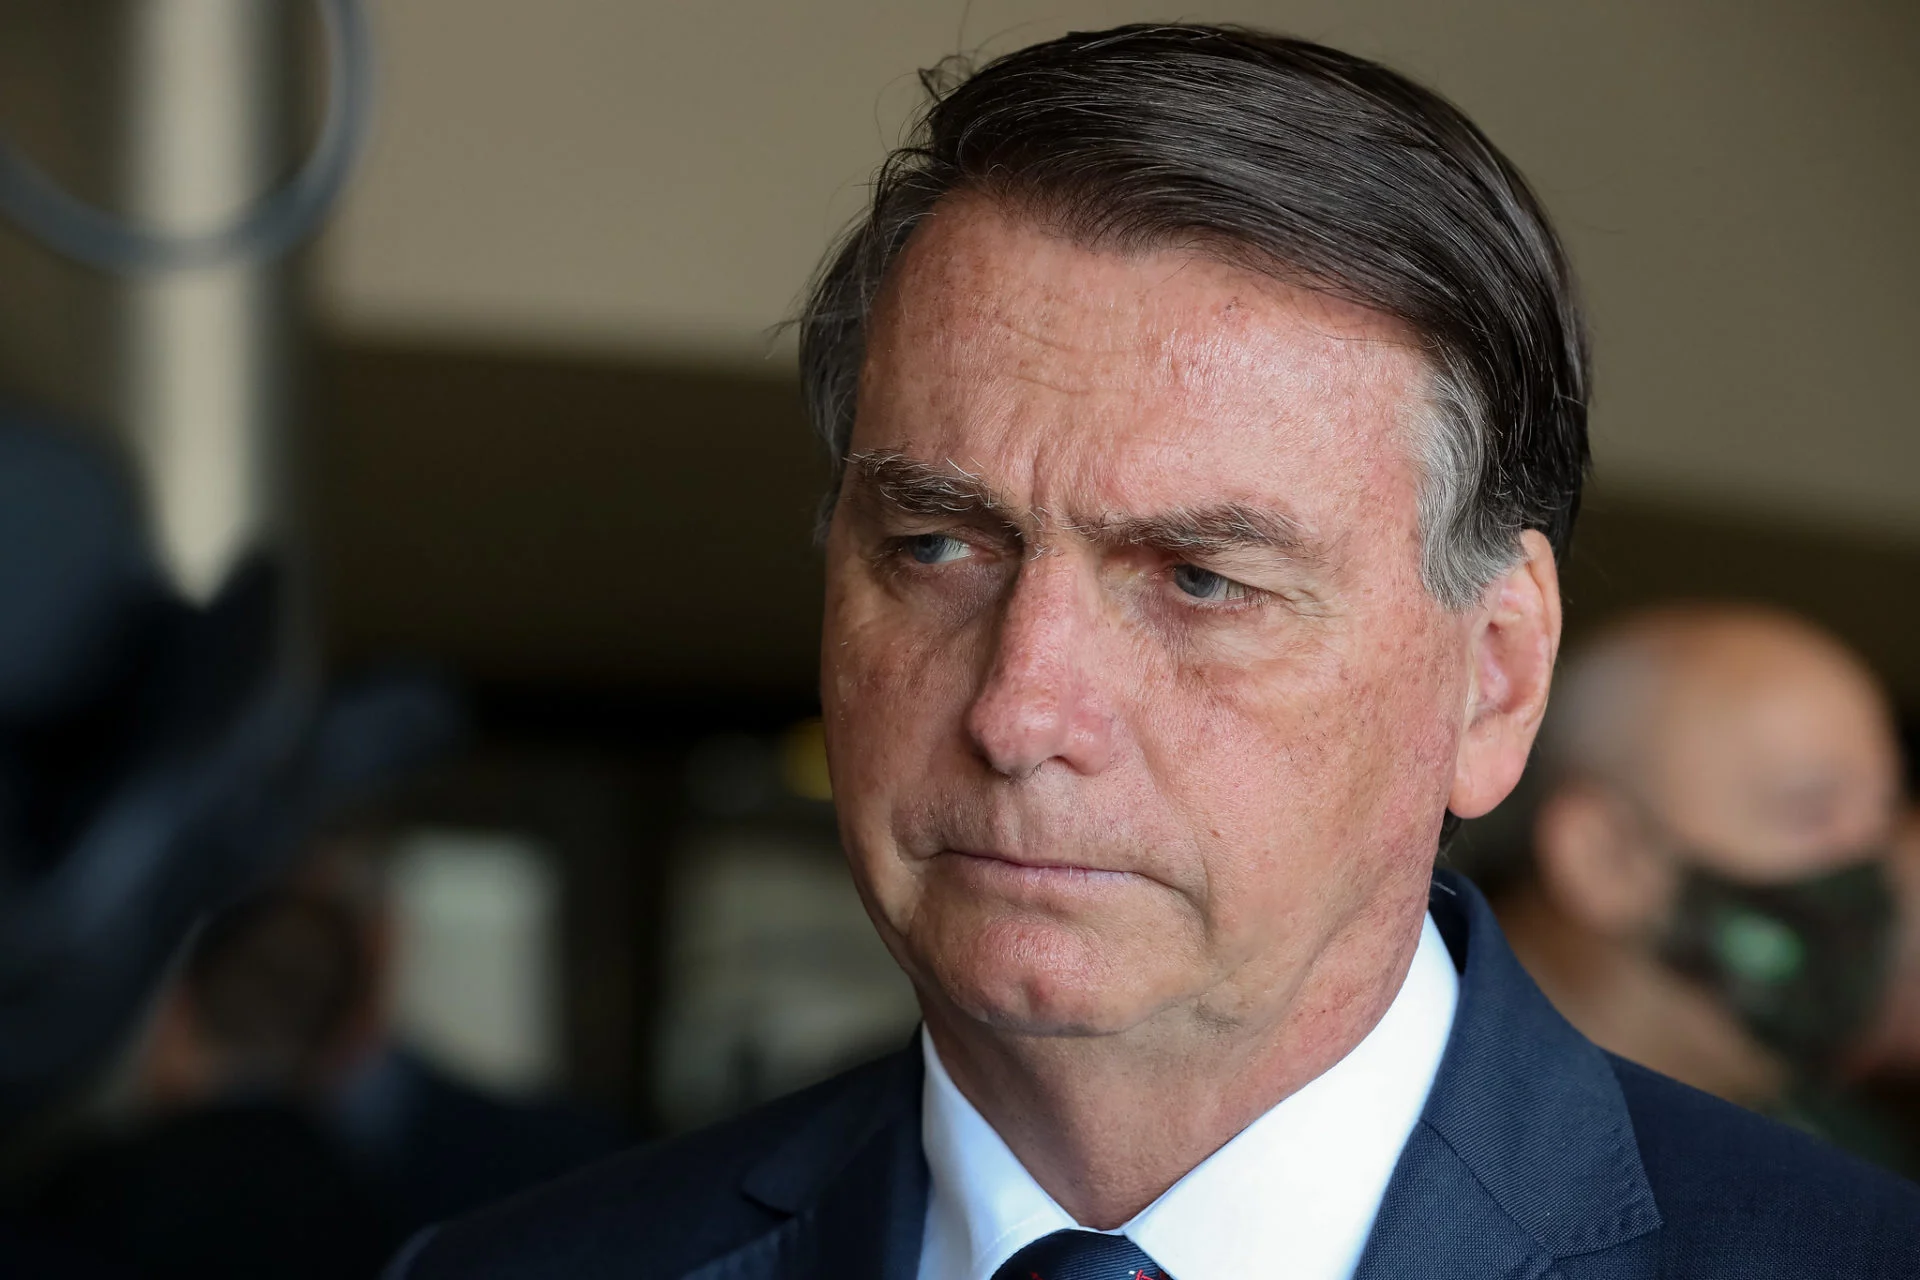 Corte de impostos dos combustíveis custará R$ 64,8 bi ao governo de Bolsonaro [na foto] em ano eleitoral